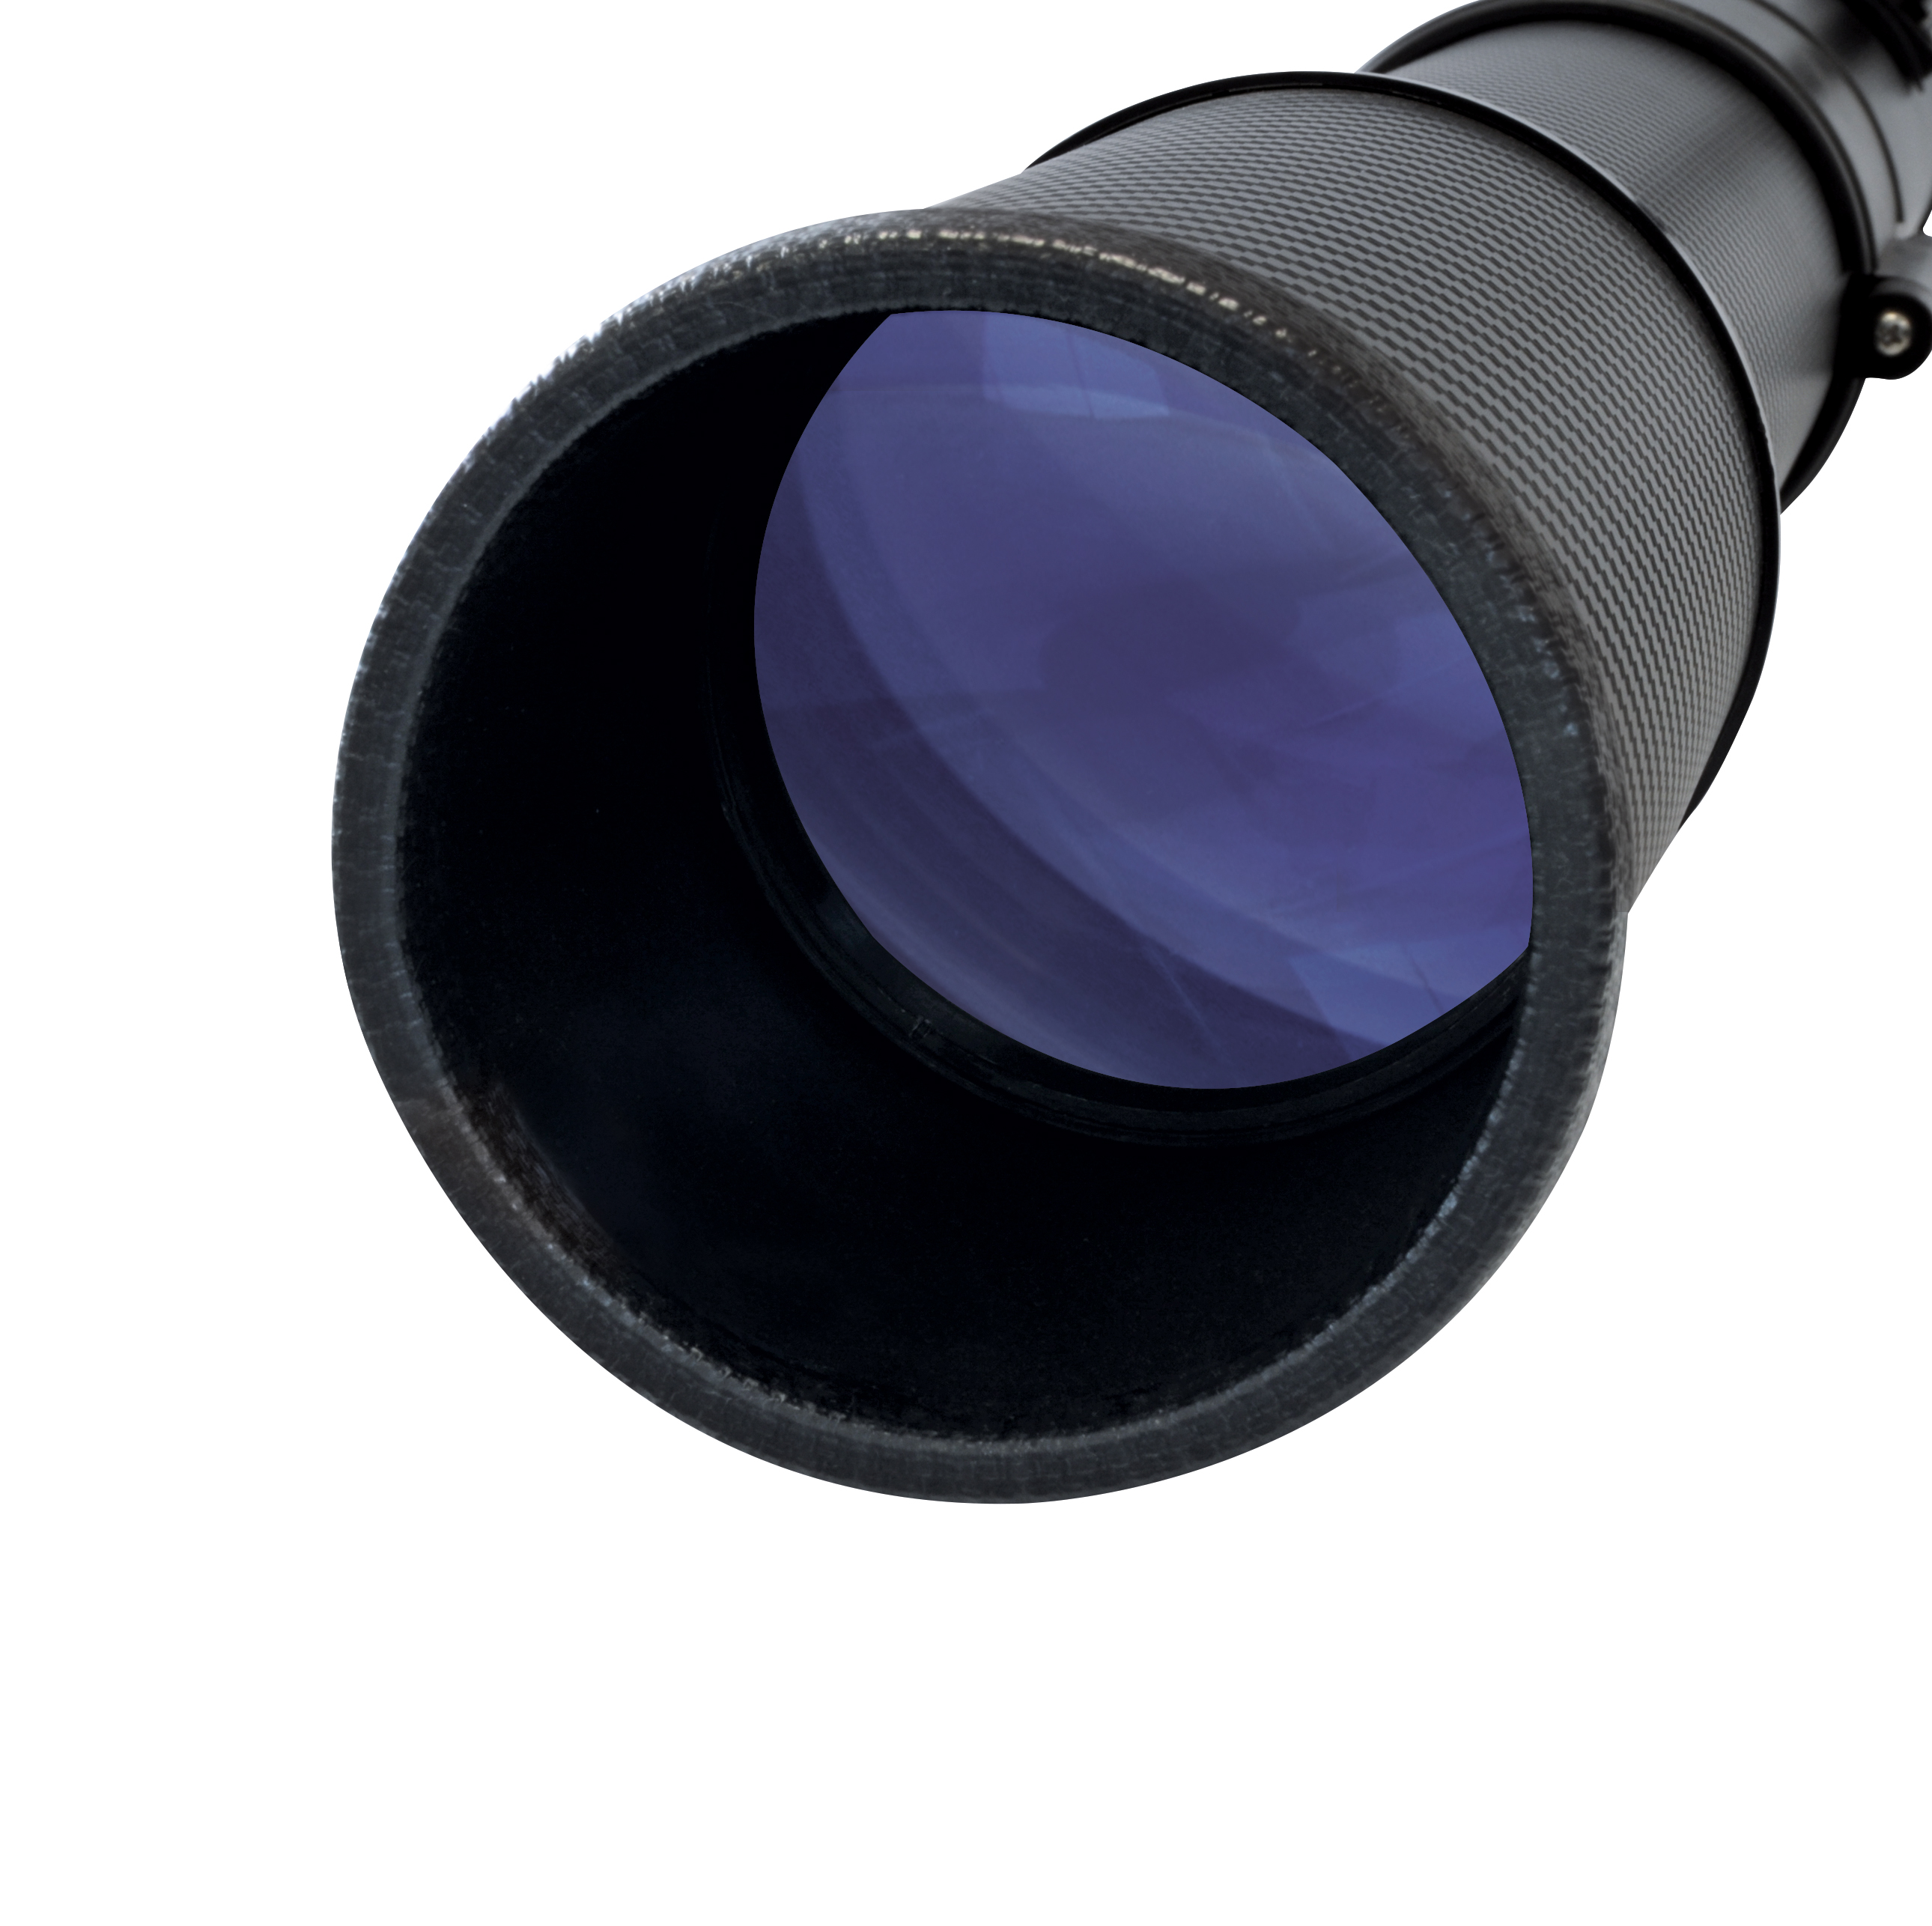 BRESSER Sirius 70/900 AZ Télescope à lentille avec adaptateur pour smartphone & filtre solaire